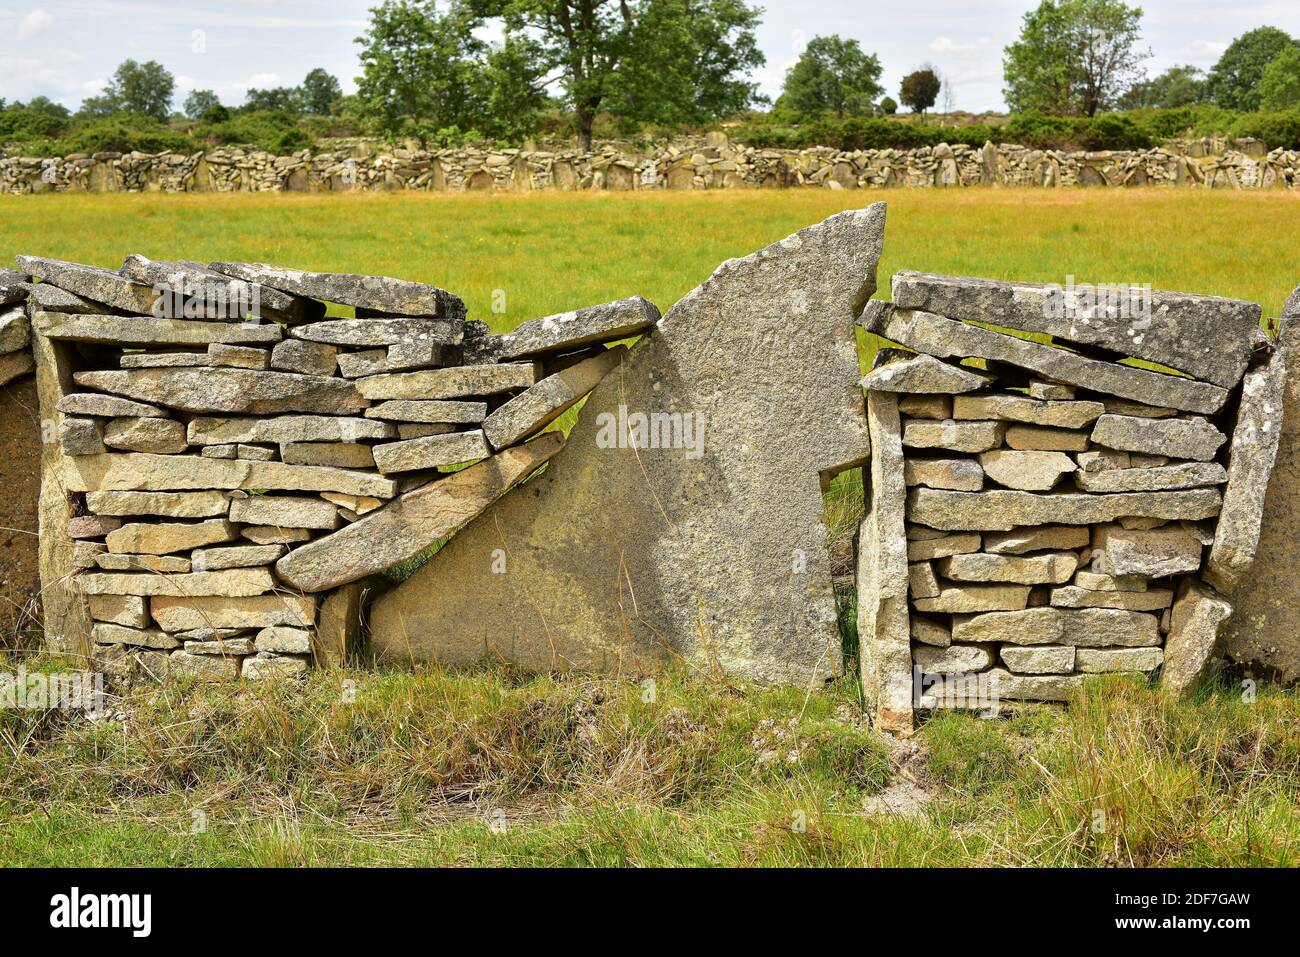 Dry stone wall with field (cortina). Sayago, Zamora province, Castilla y Leon, Spain. Stock Photo